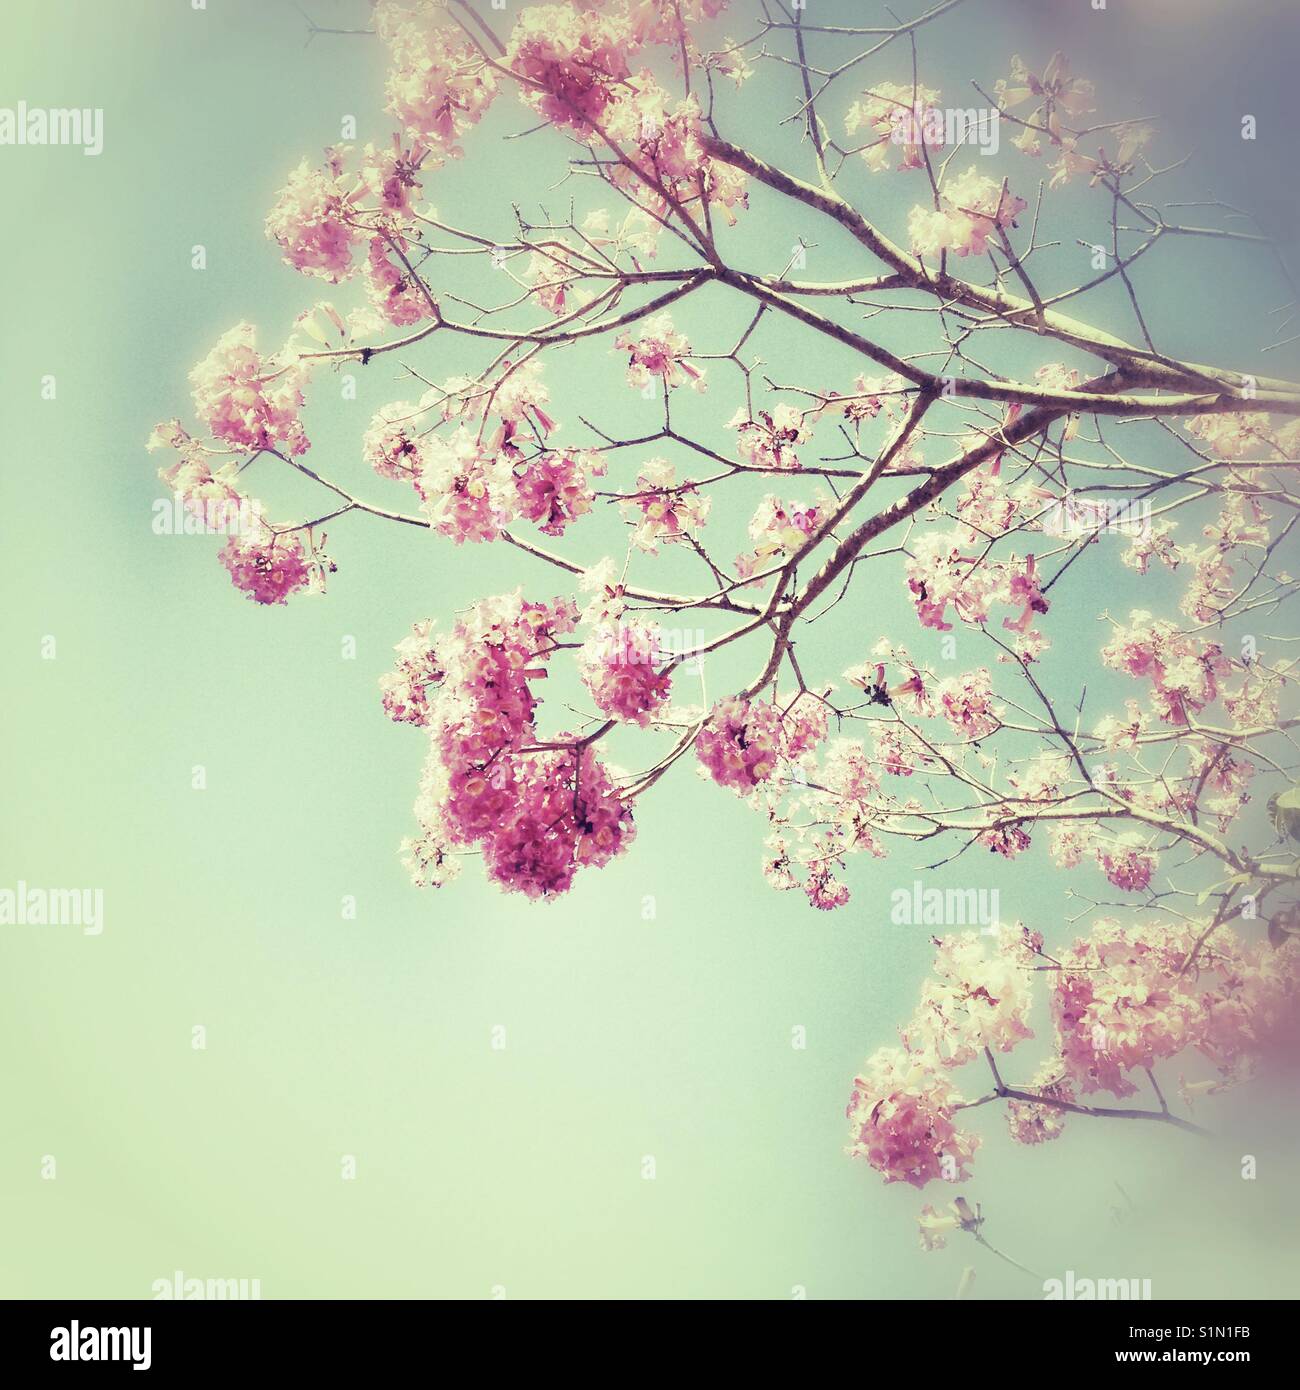 Fairy floss fiorisce e cieli turchese, molla, iPhone pic, albero in fiore, lieve effetto grunge. Foto Stock